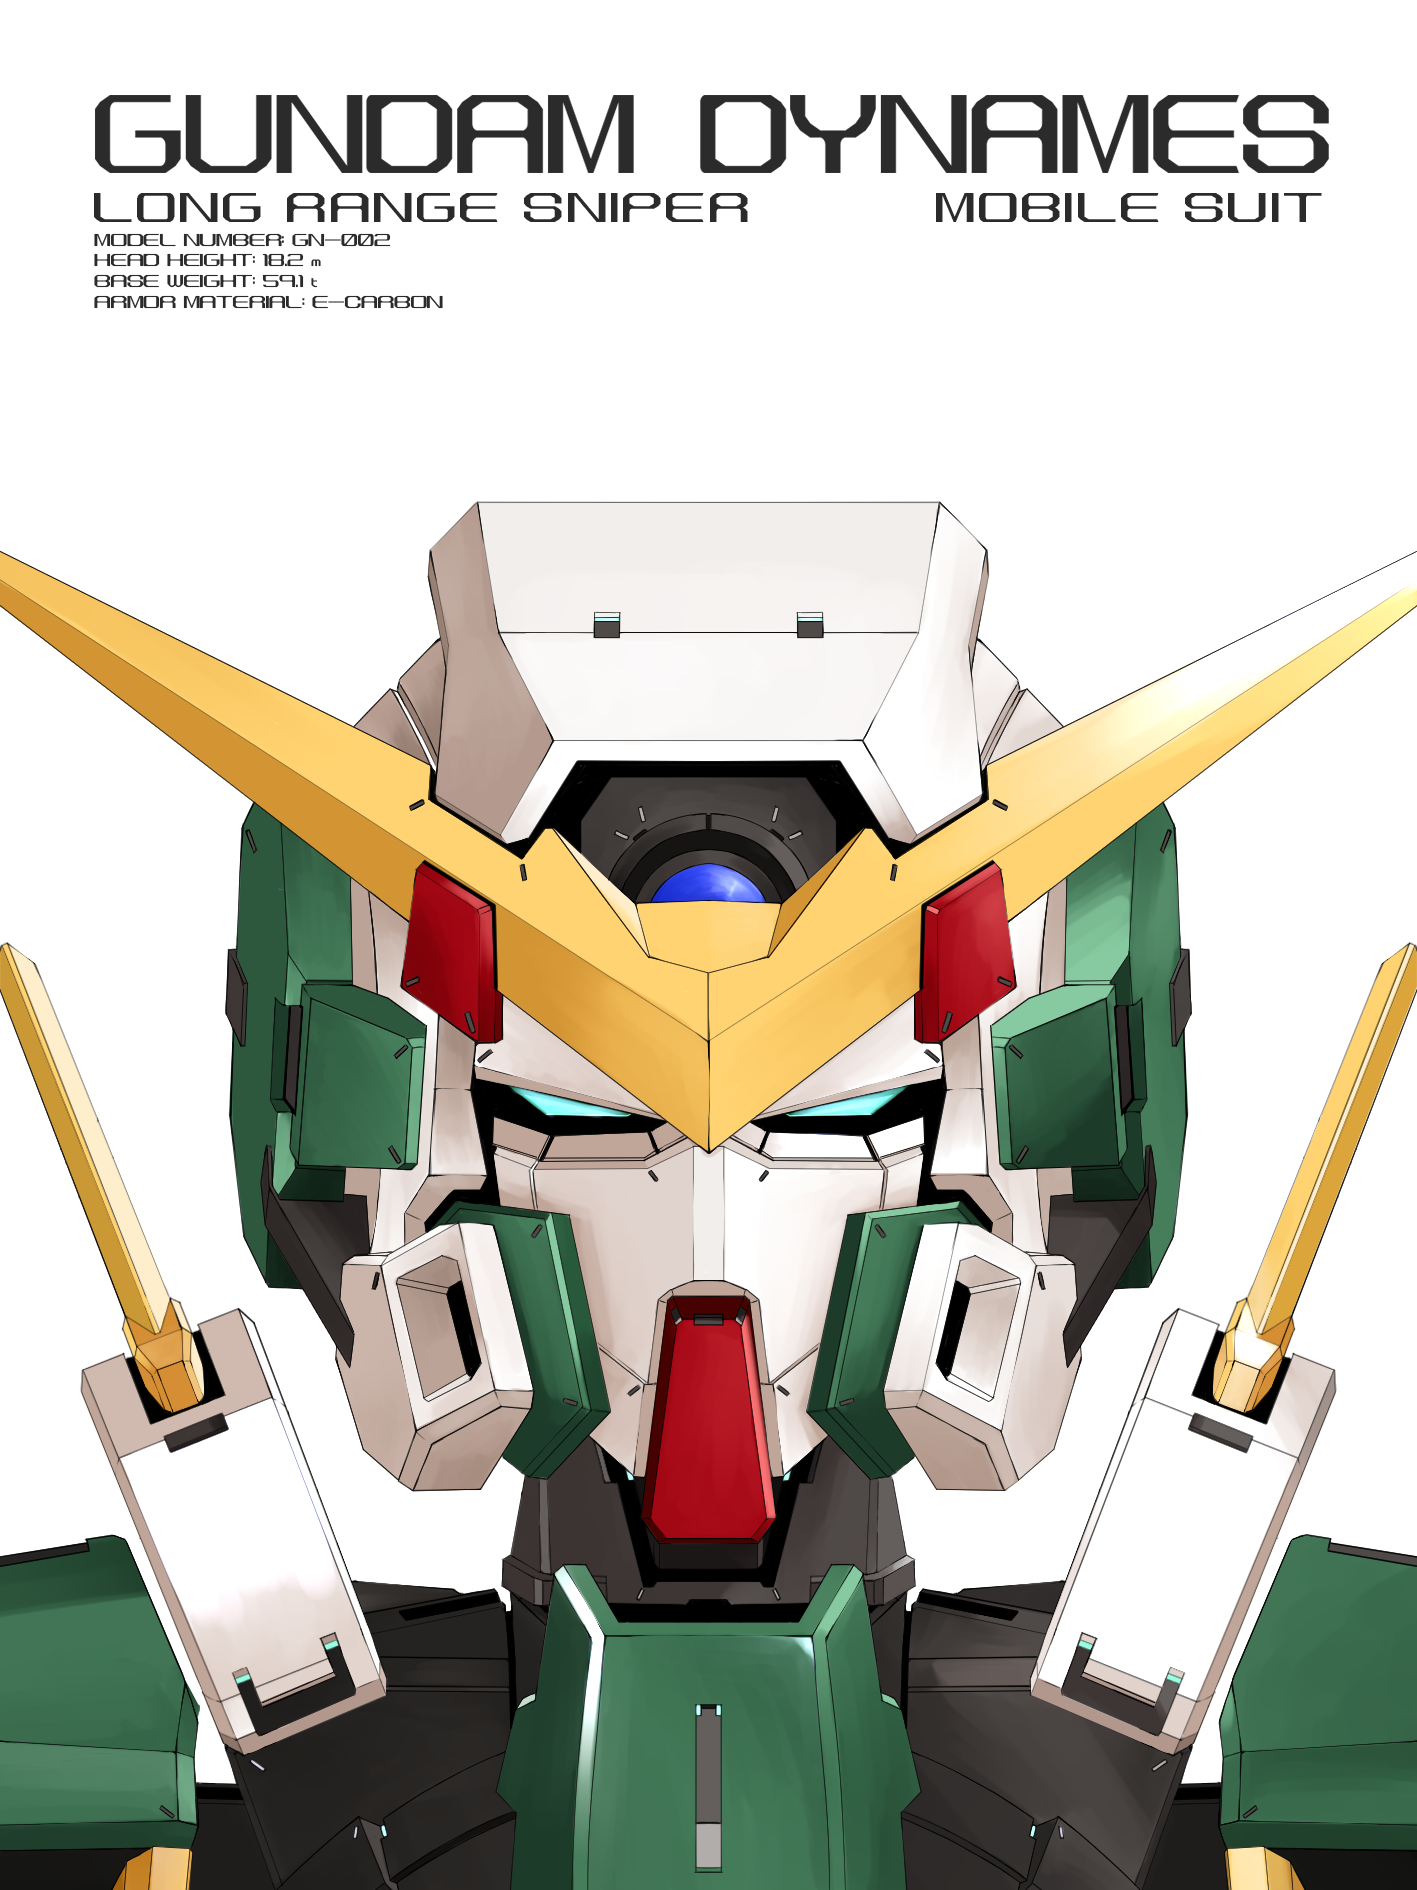 Anime 1417x1890 Gundam Dynames anime mechs Super Robot Taisen Mobile Suit Gundam 00 Gundam artwork digital art fan art